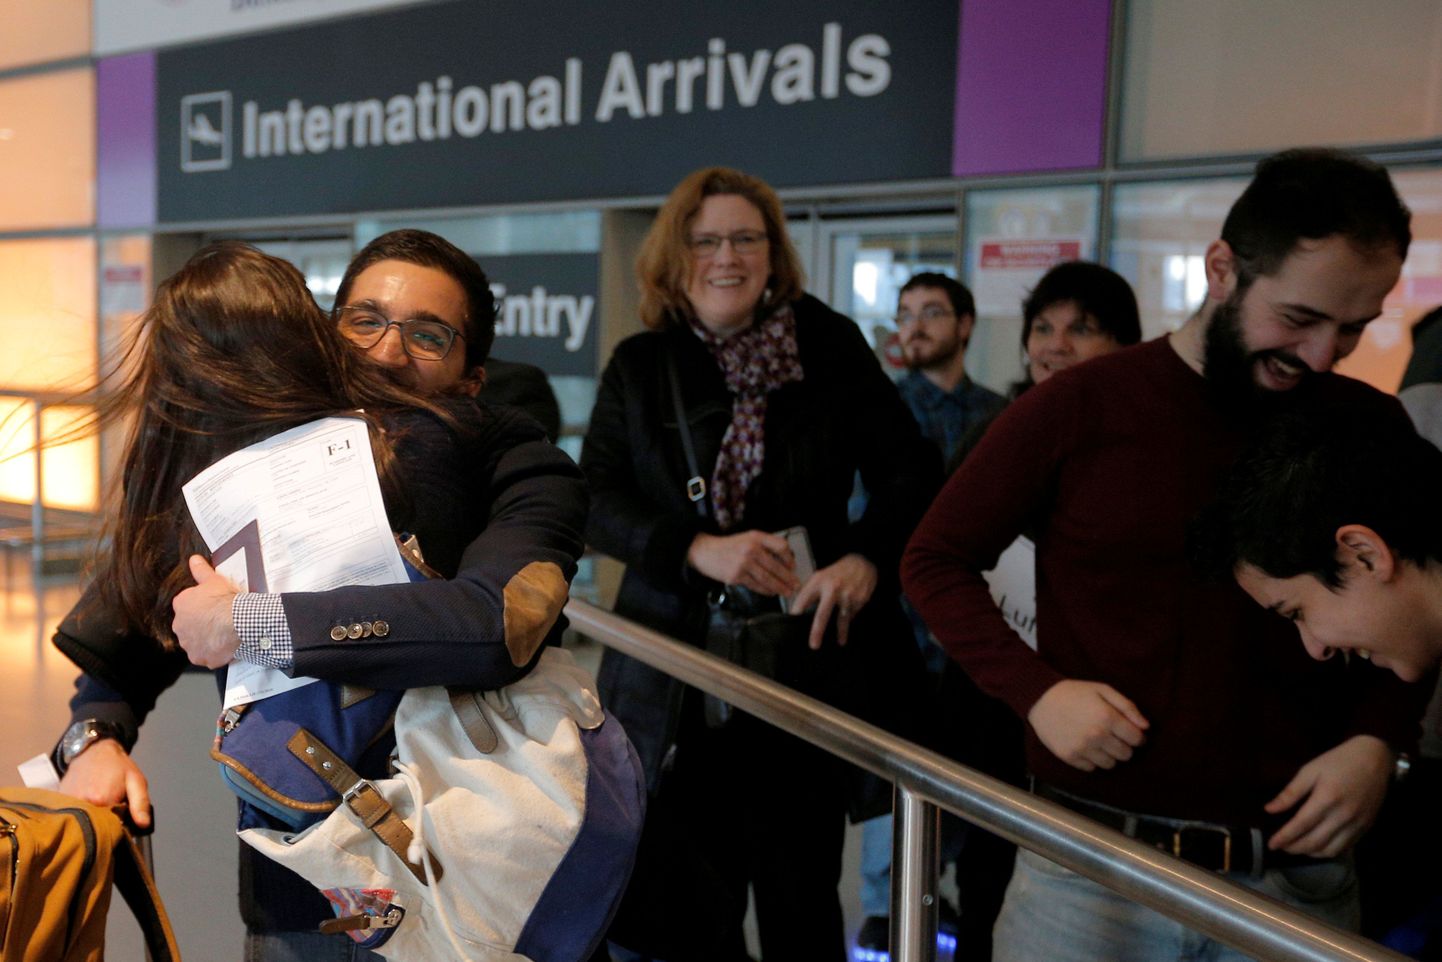 Worcesteri polütehnilise instituudi (WPI) üliõpilane Behnam Partopour lasti pärast föderaalkohtuniku otsust Trumpi reisikeeld külmutada USA lennule. Fotol kallistab mees oma õde Logani lennujaamas.